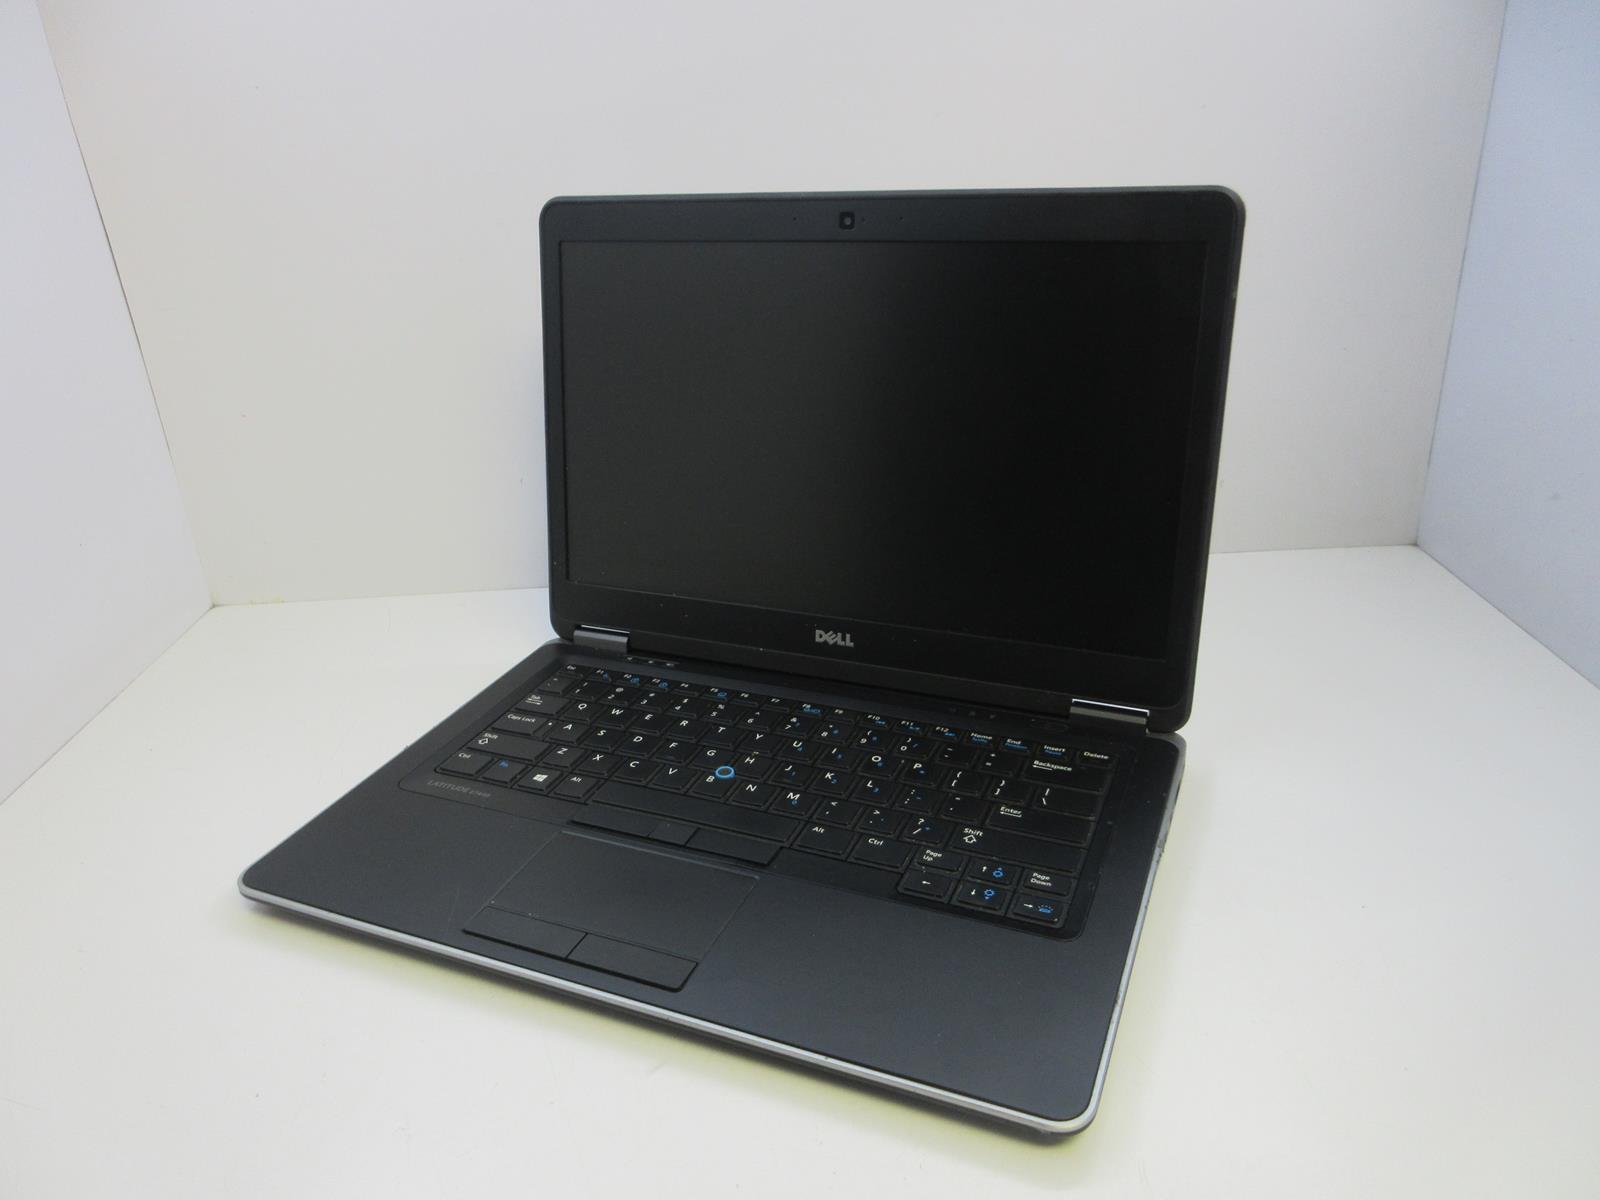 DELL LATITUDE E7440 Laptop w/ Intel Core i7-4600U 2.10GHZ + 4 GB No HD/Battery